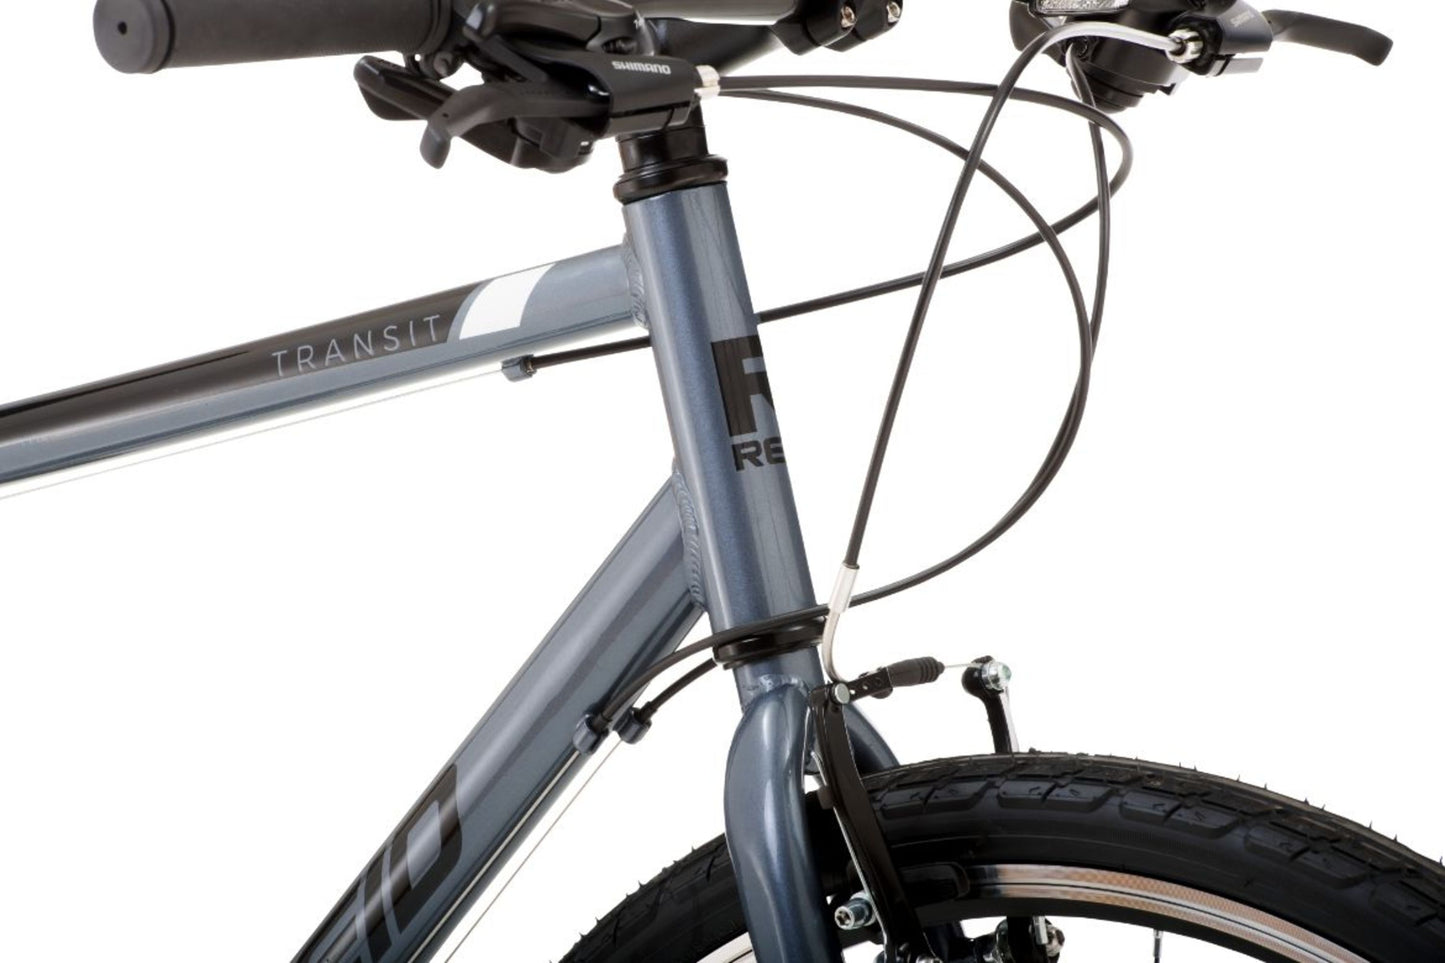 Transit Hybrid Commuter Bike in Grey showing Reid logo on bike frame from Reid Cycles Australia 